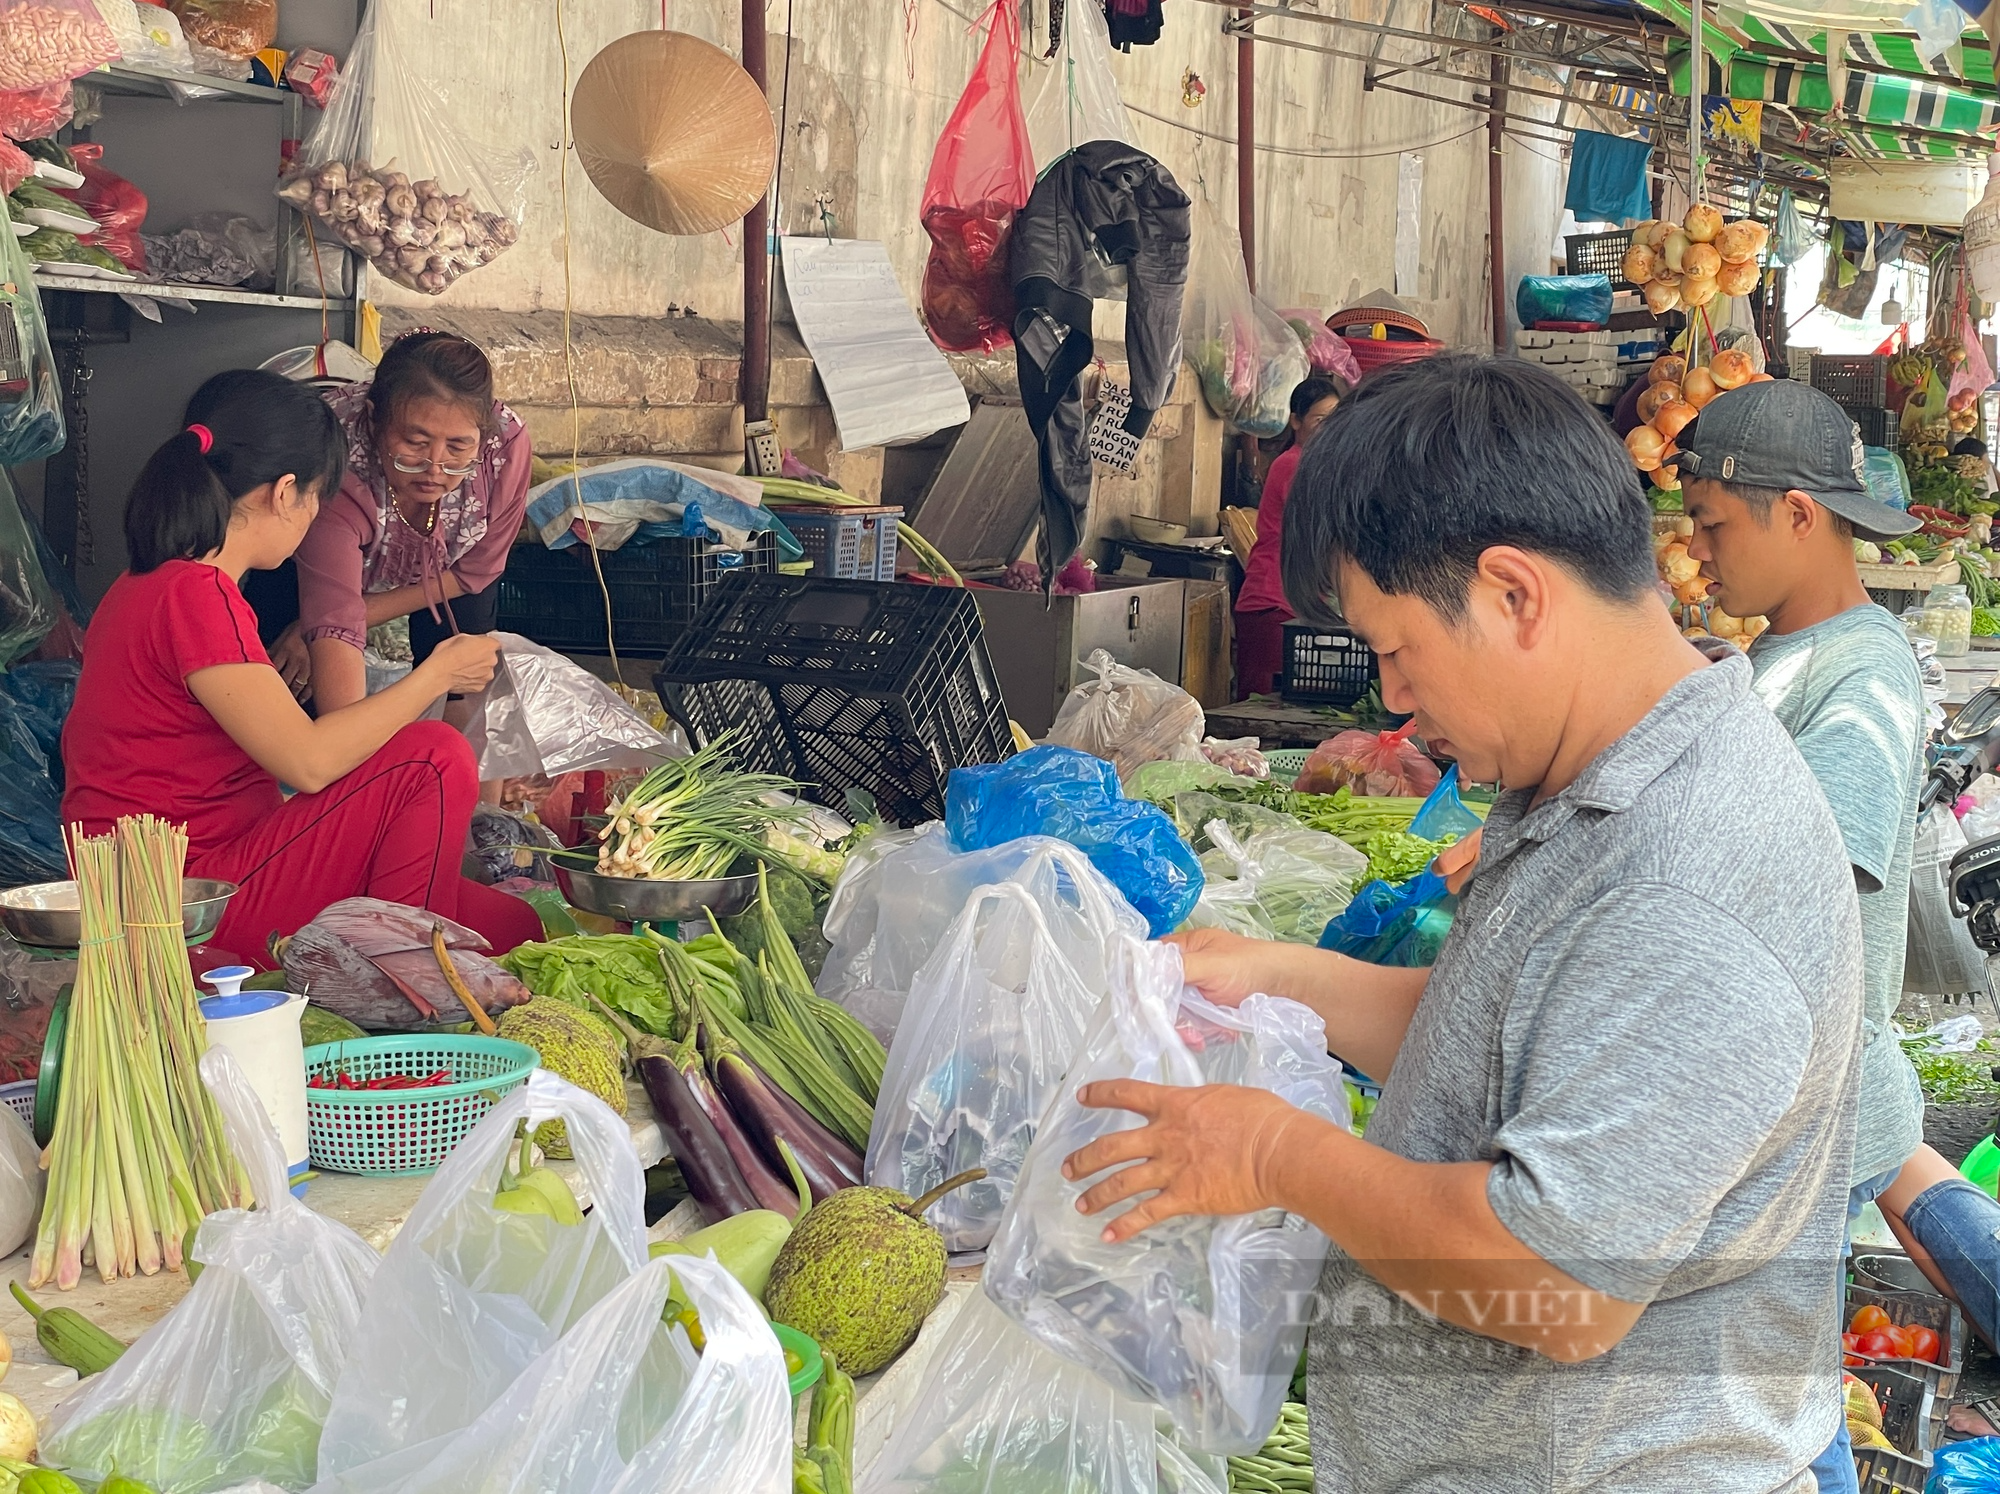 Tiểu thương chợ Sài Gòn xếp hàng dài chờ khách, chiều đóng cửa về sớm vì ế - Ảnh 7.